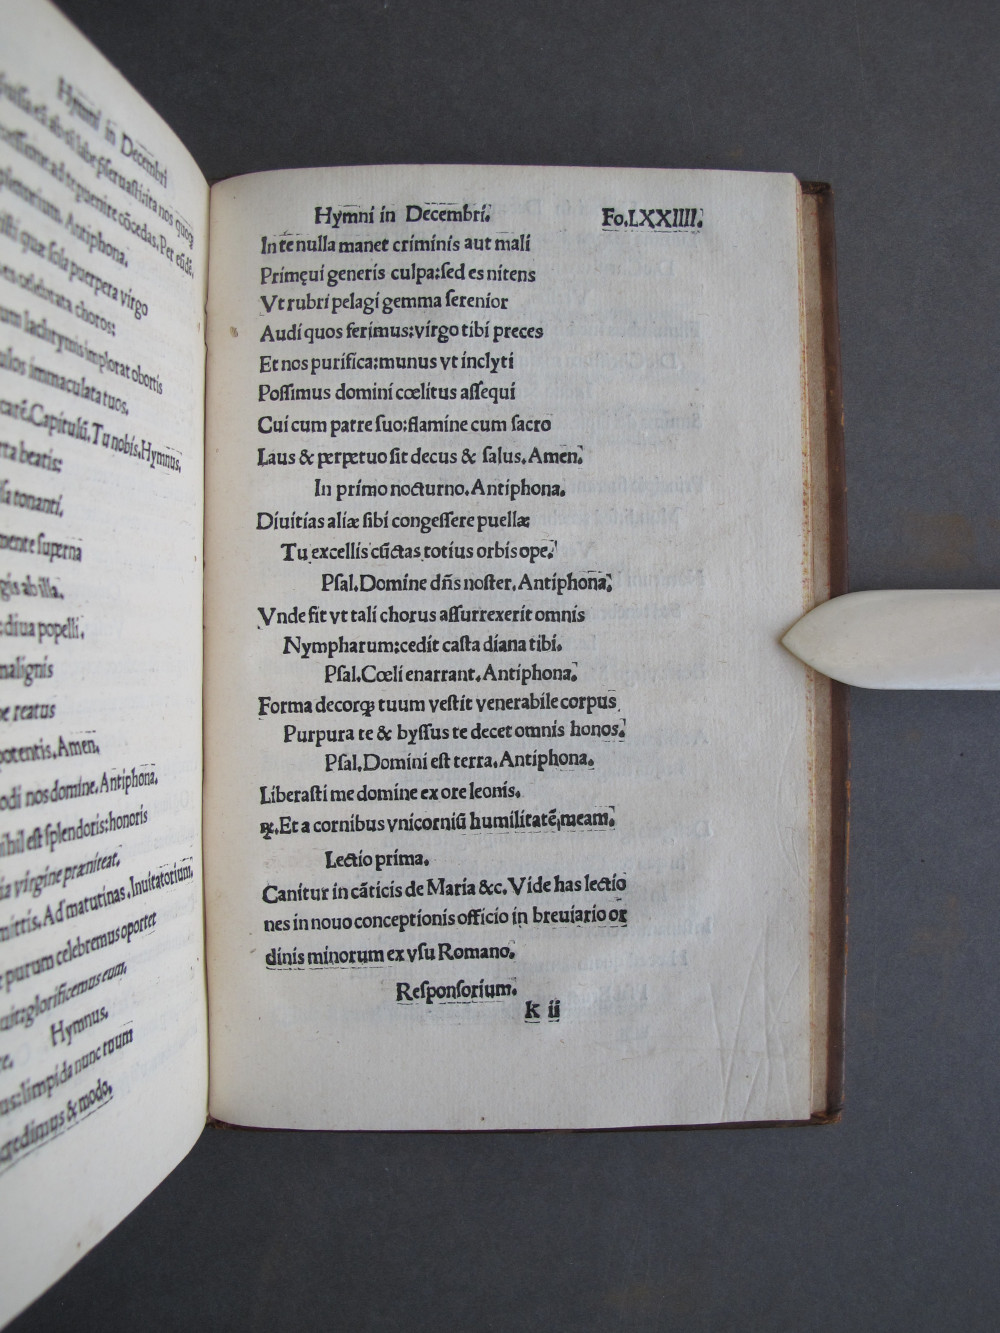 Folio 74 recto